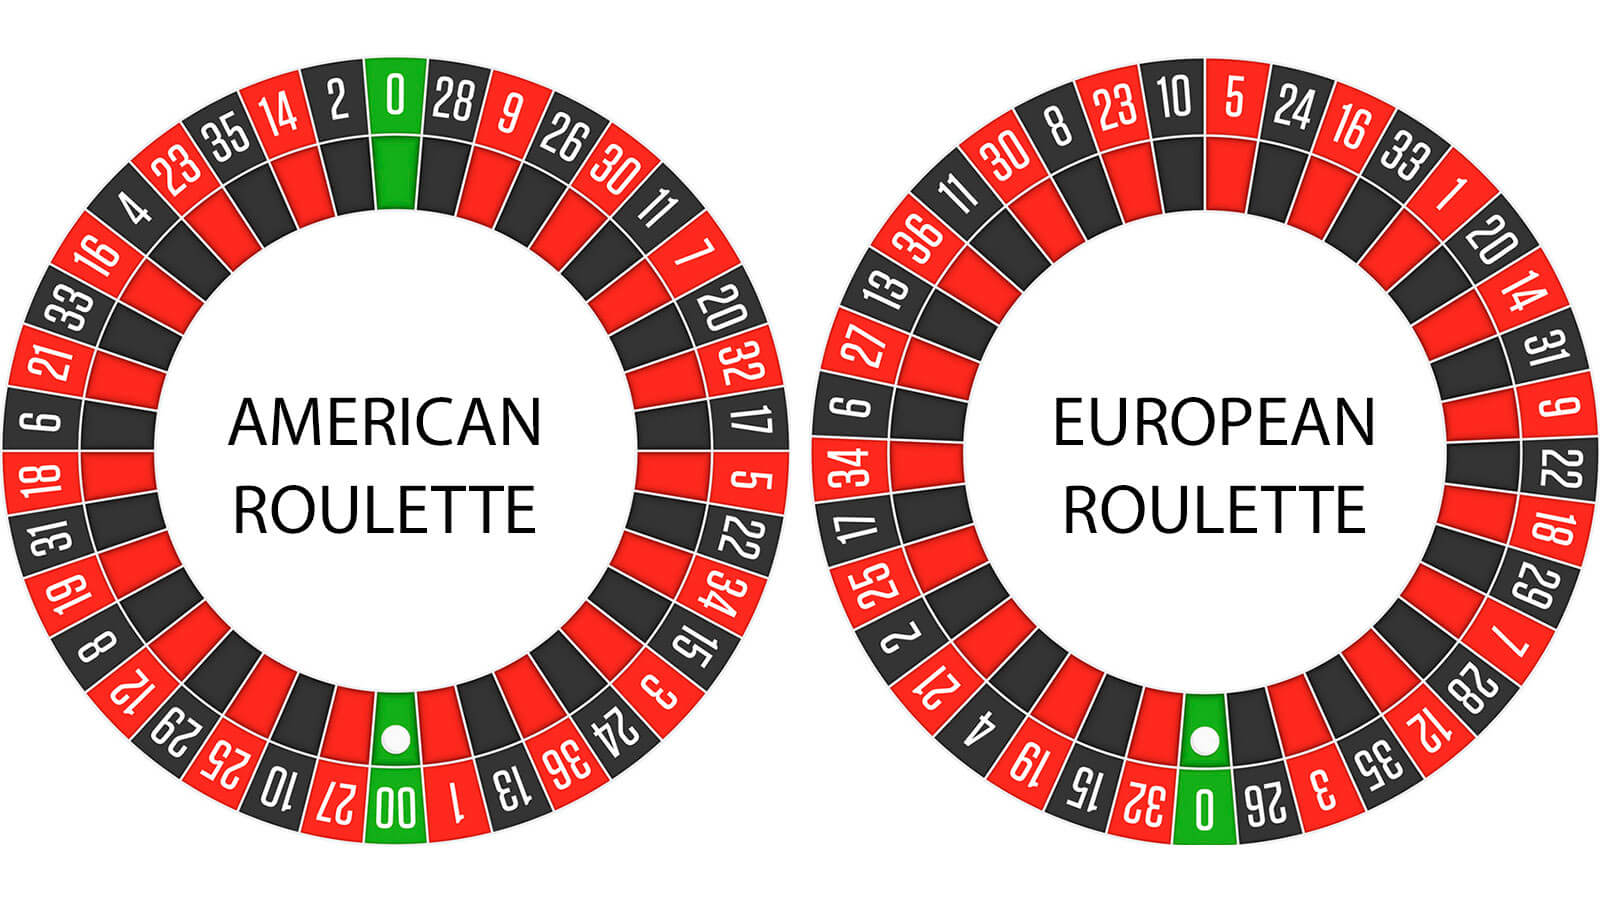 European Roullette